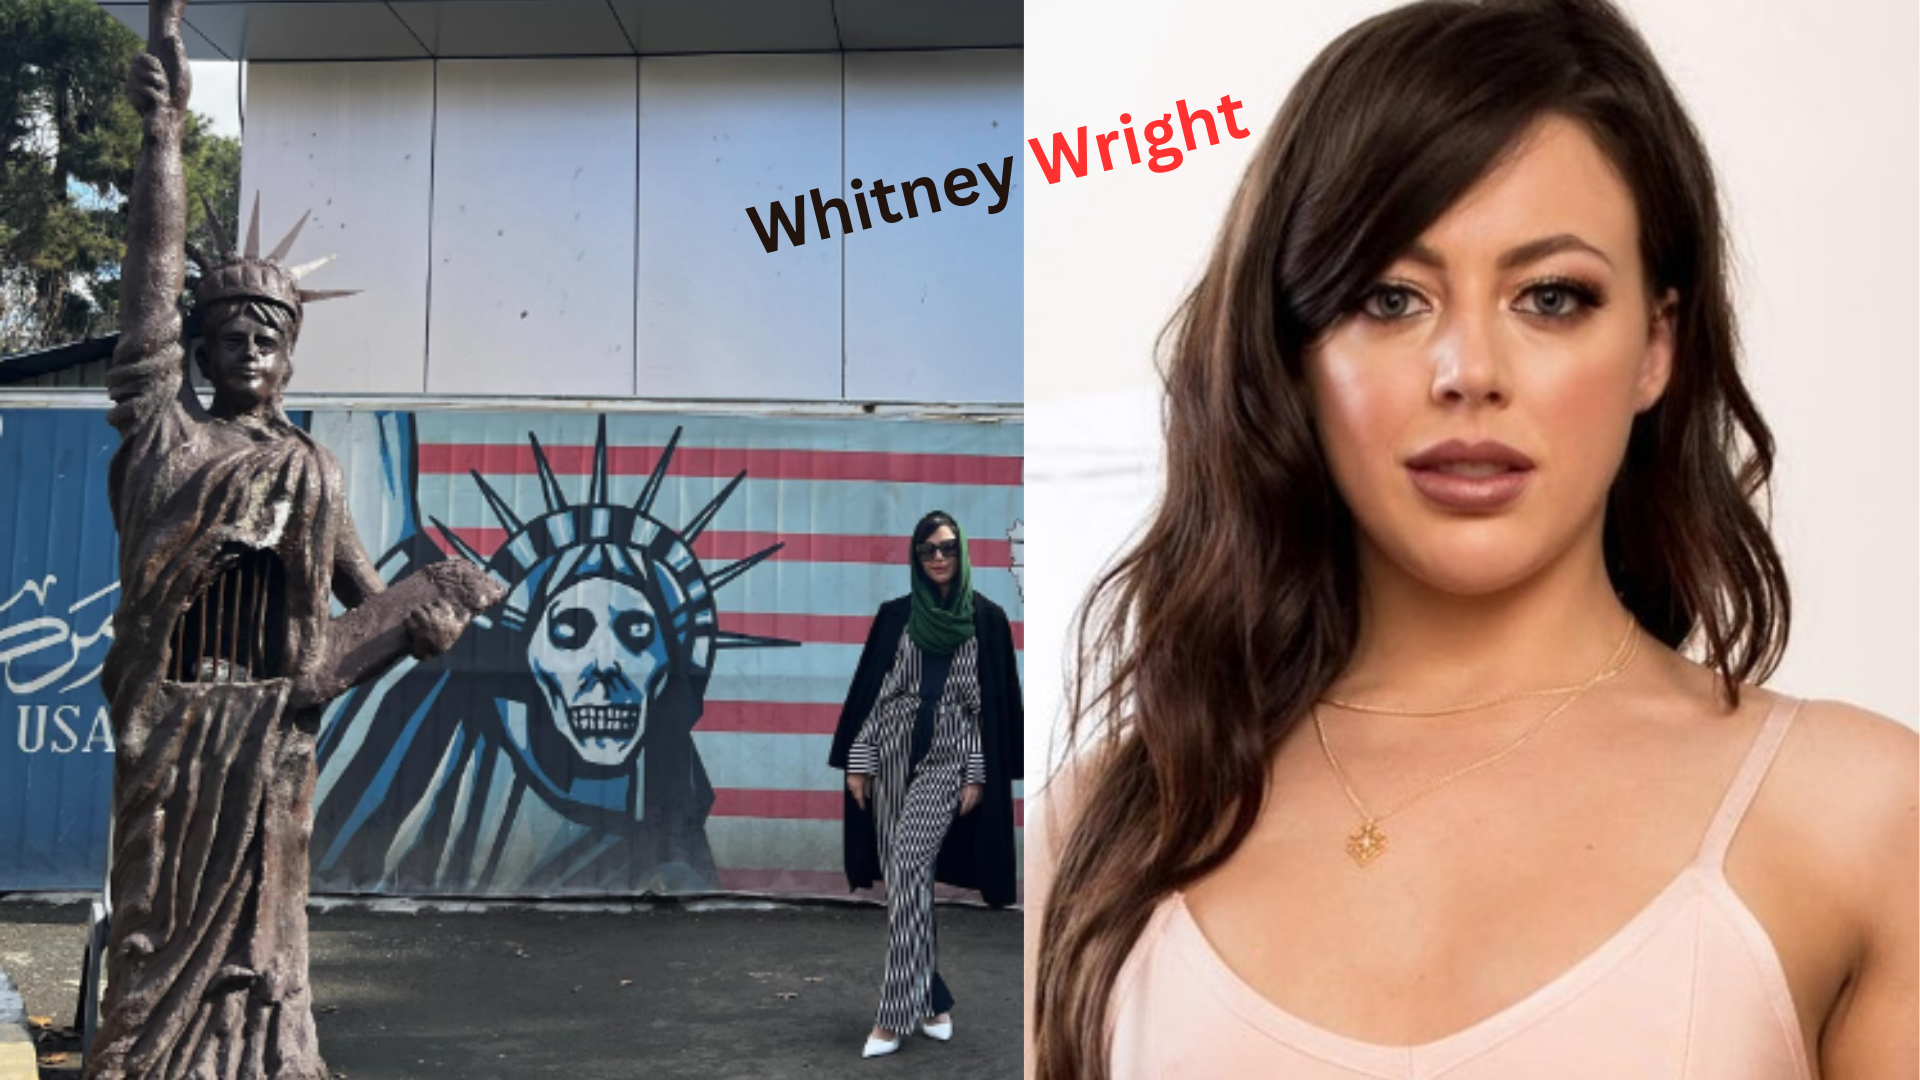 Whitney Wright